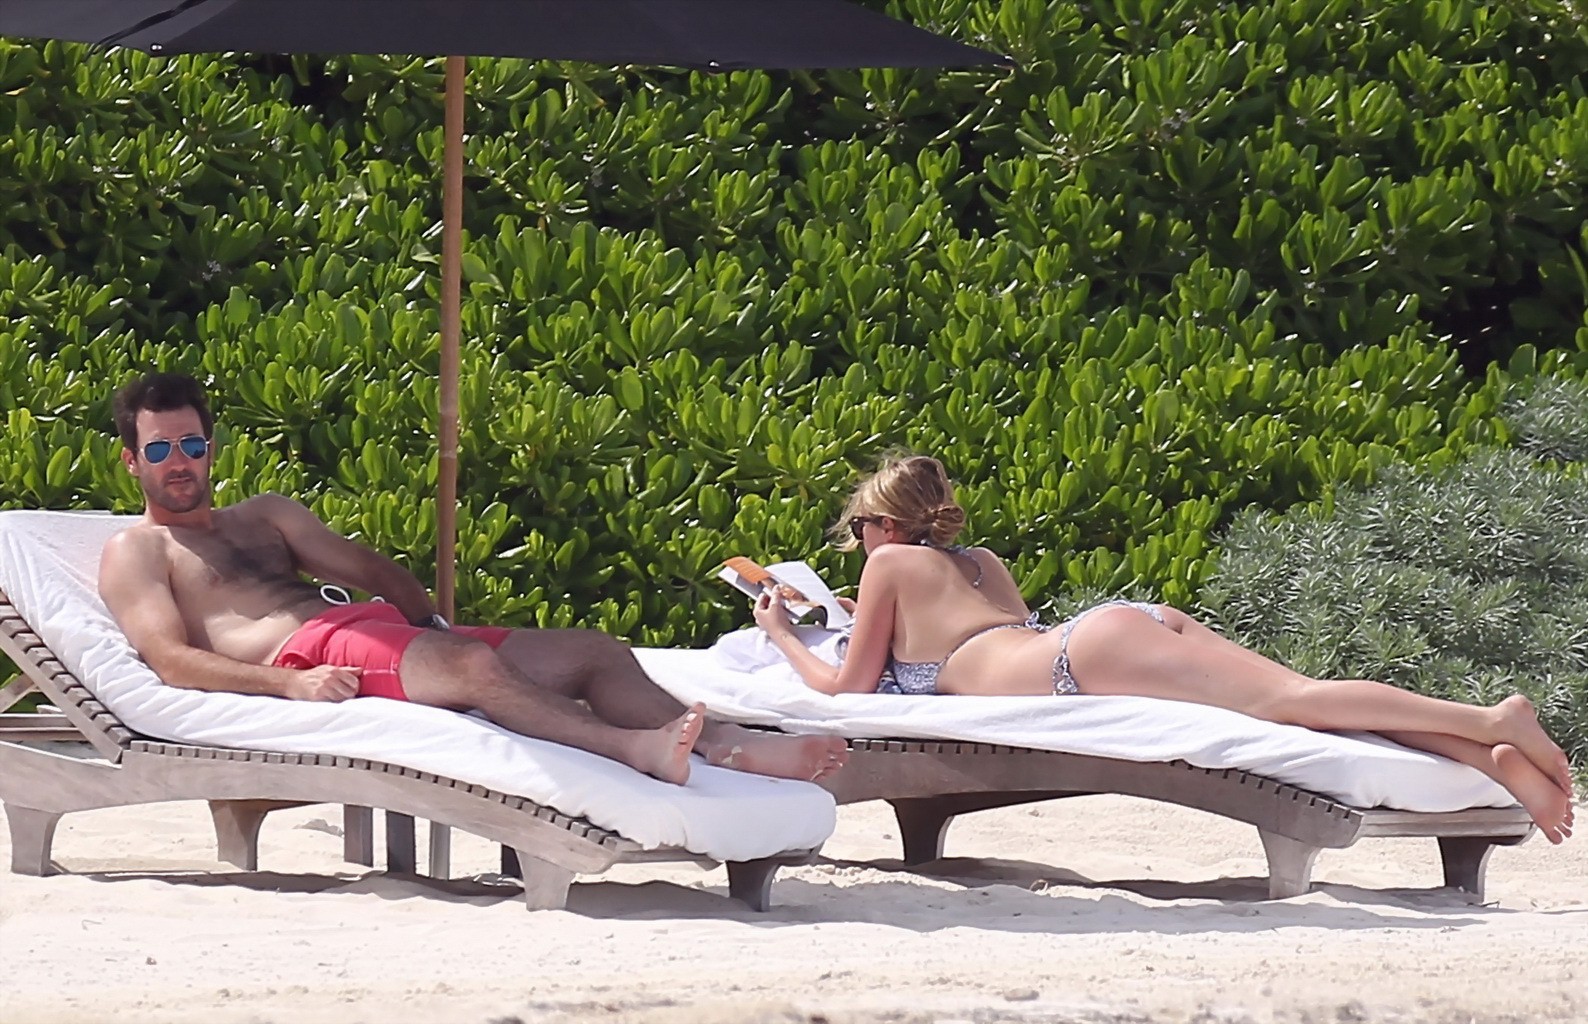 Kate upton che abbronza i suoi meloni lattei e il suo culo in bikini d'argento alla spiaggia in mex
 #75190965